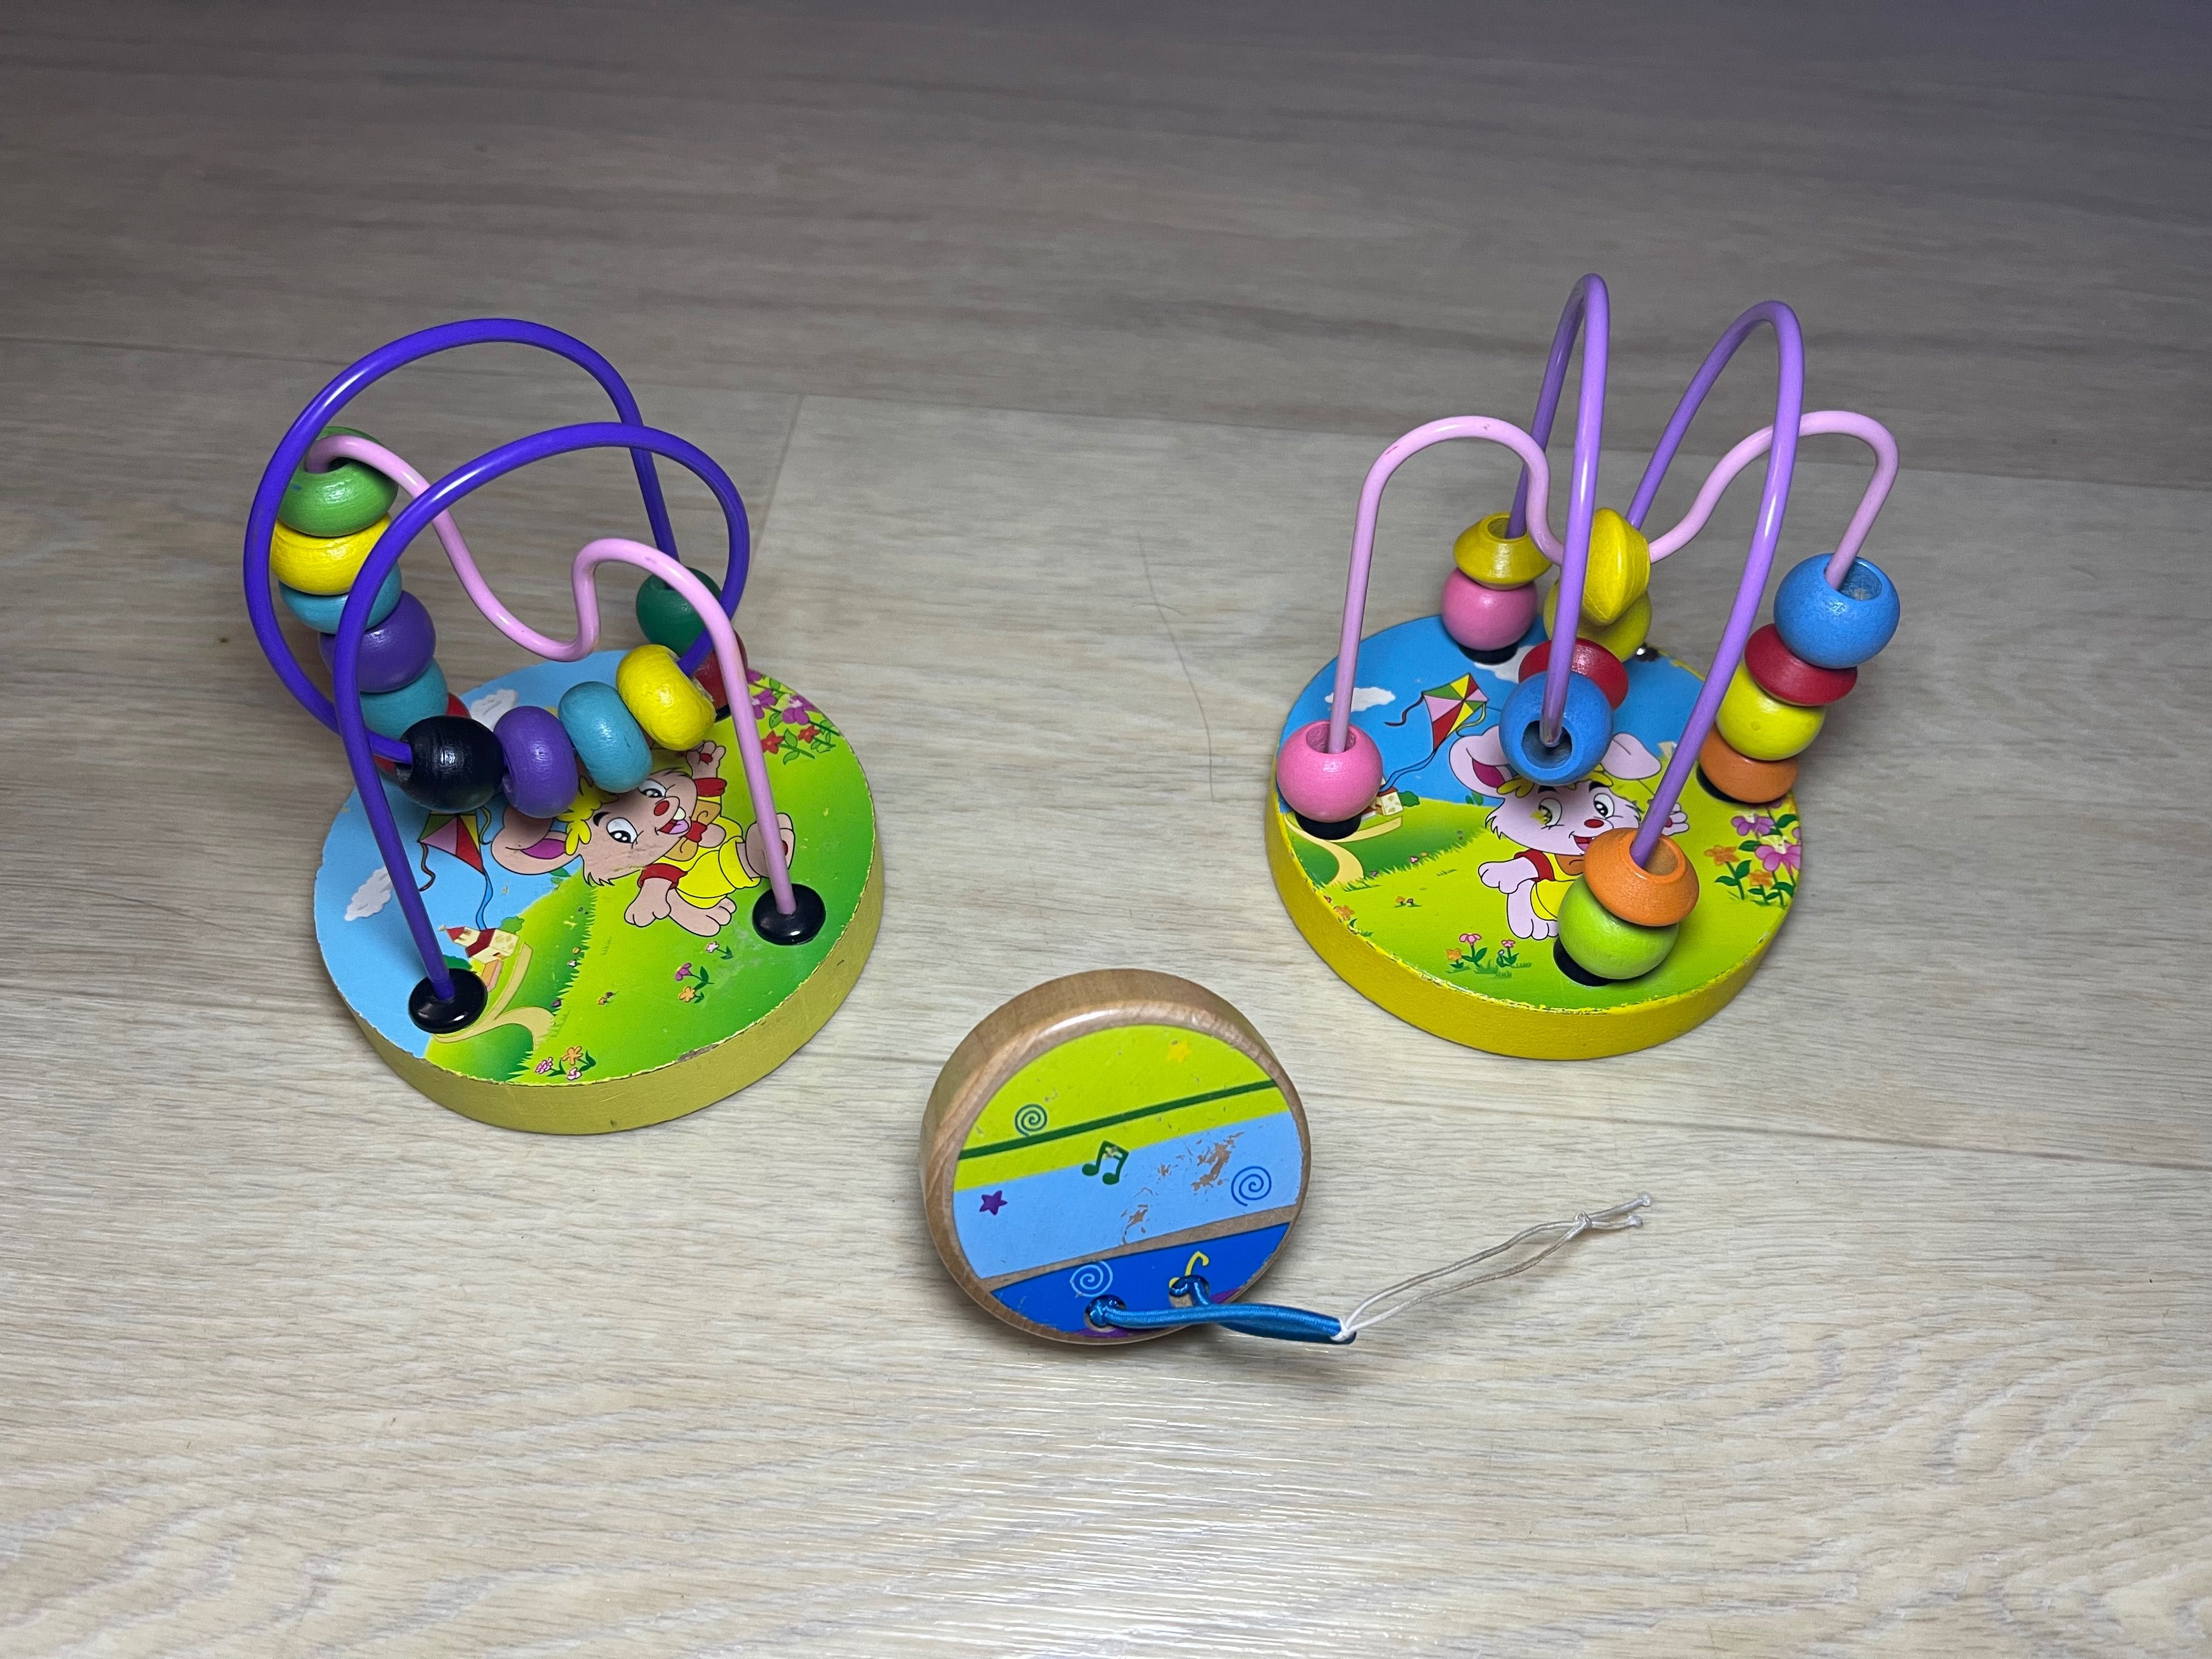 Play Smart погремушка каталка машинка детская игрушка червячок